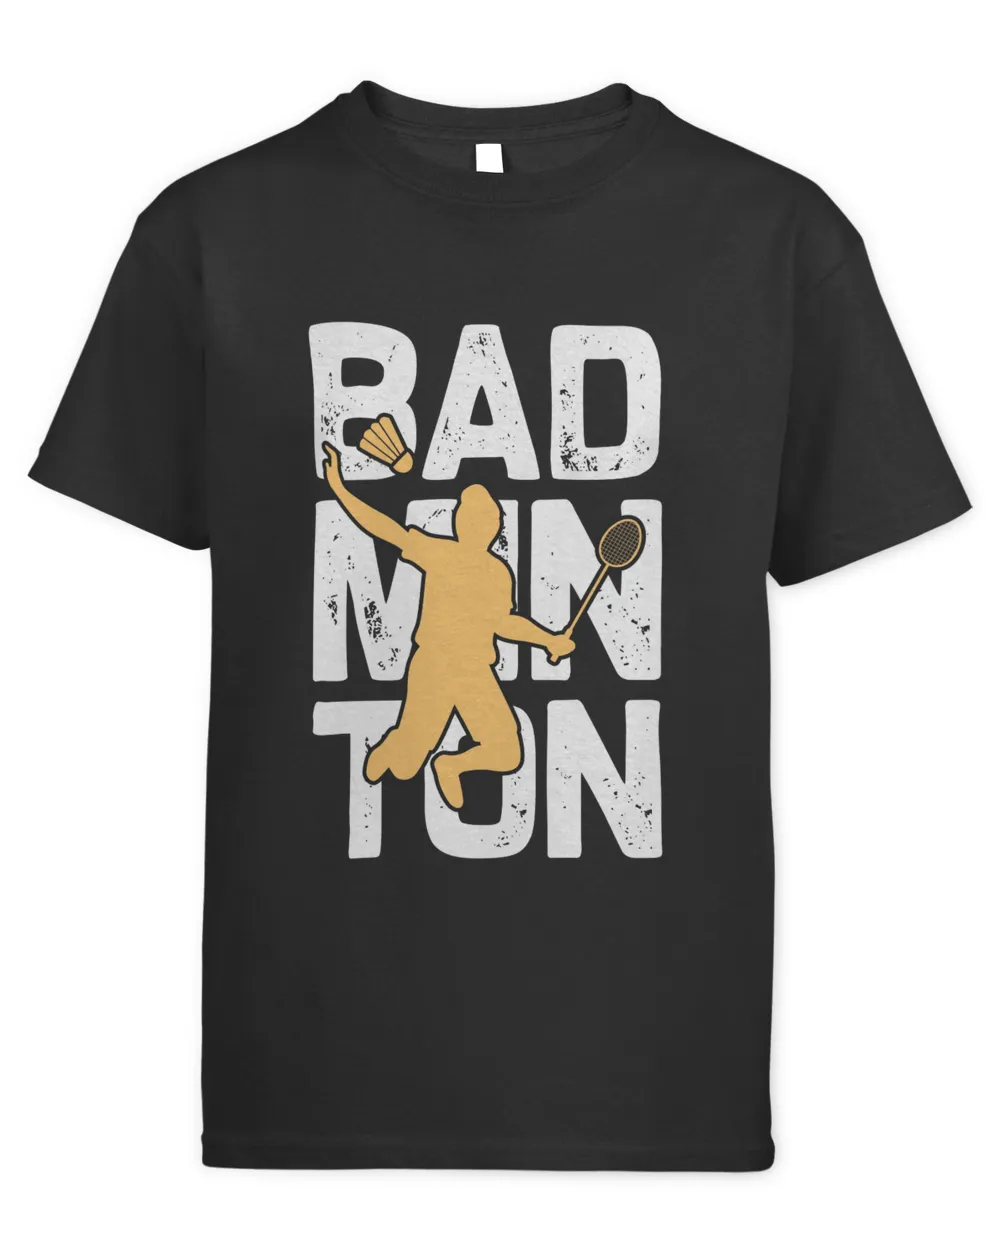 Bad Shirt, Badminton Shirt,Badminton T-shirt,Funny Badminton Shirt, Badminton Gift,Sport Shirt